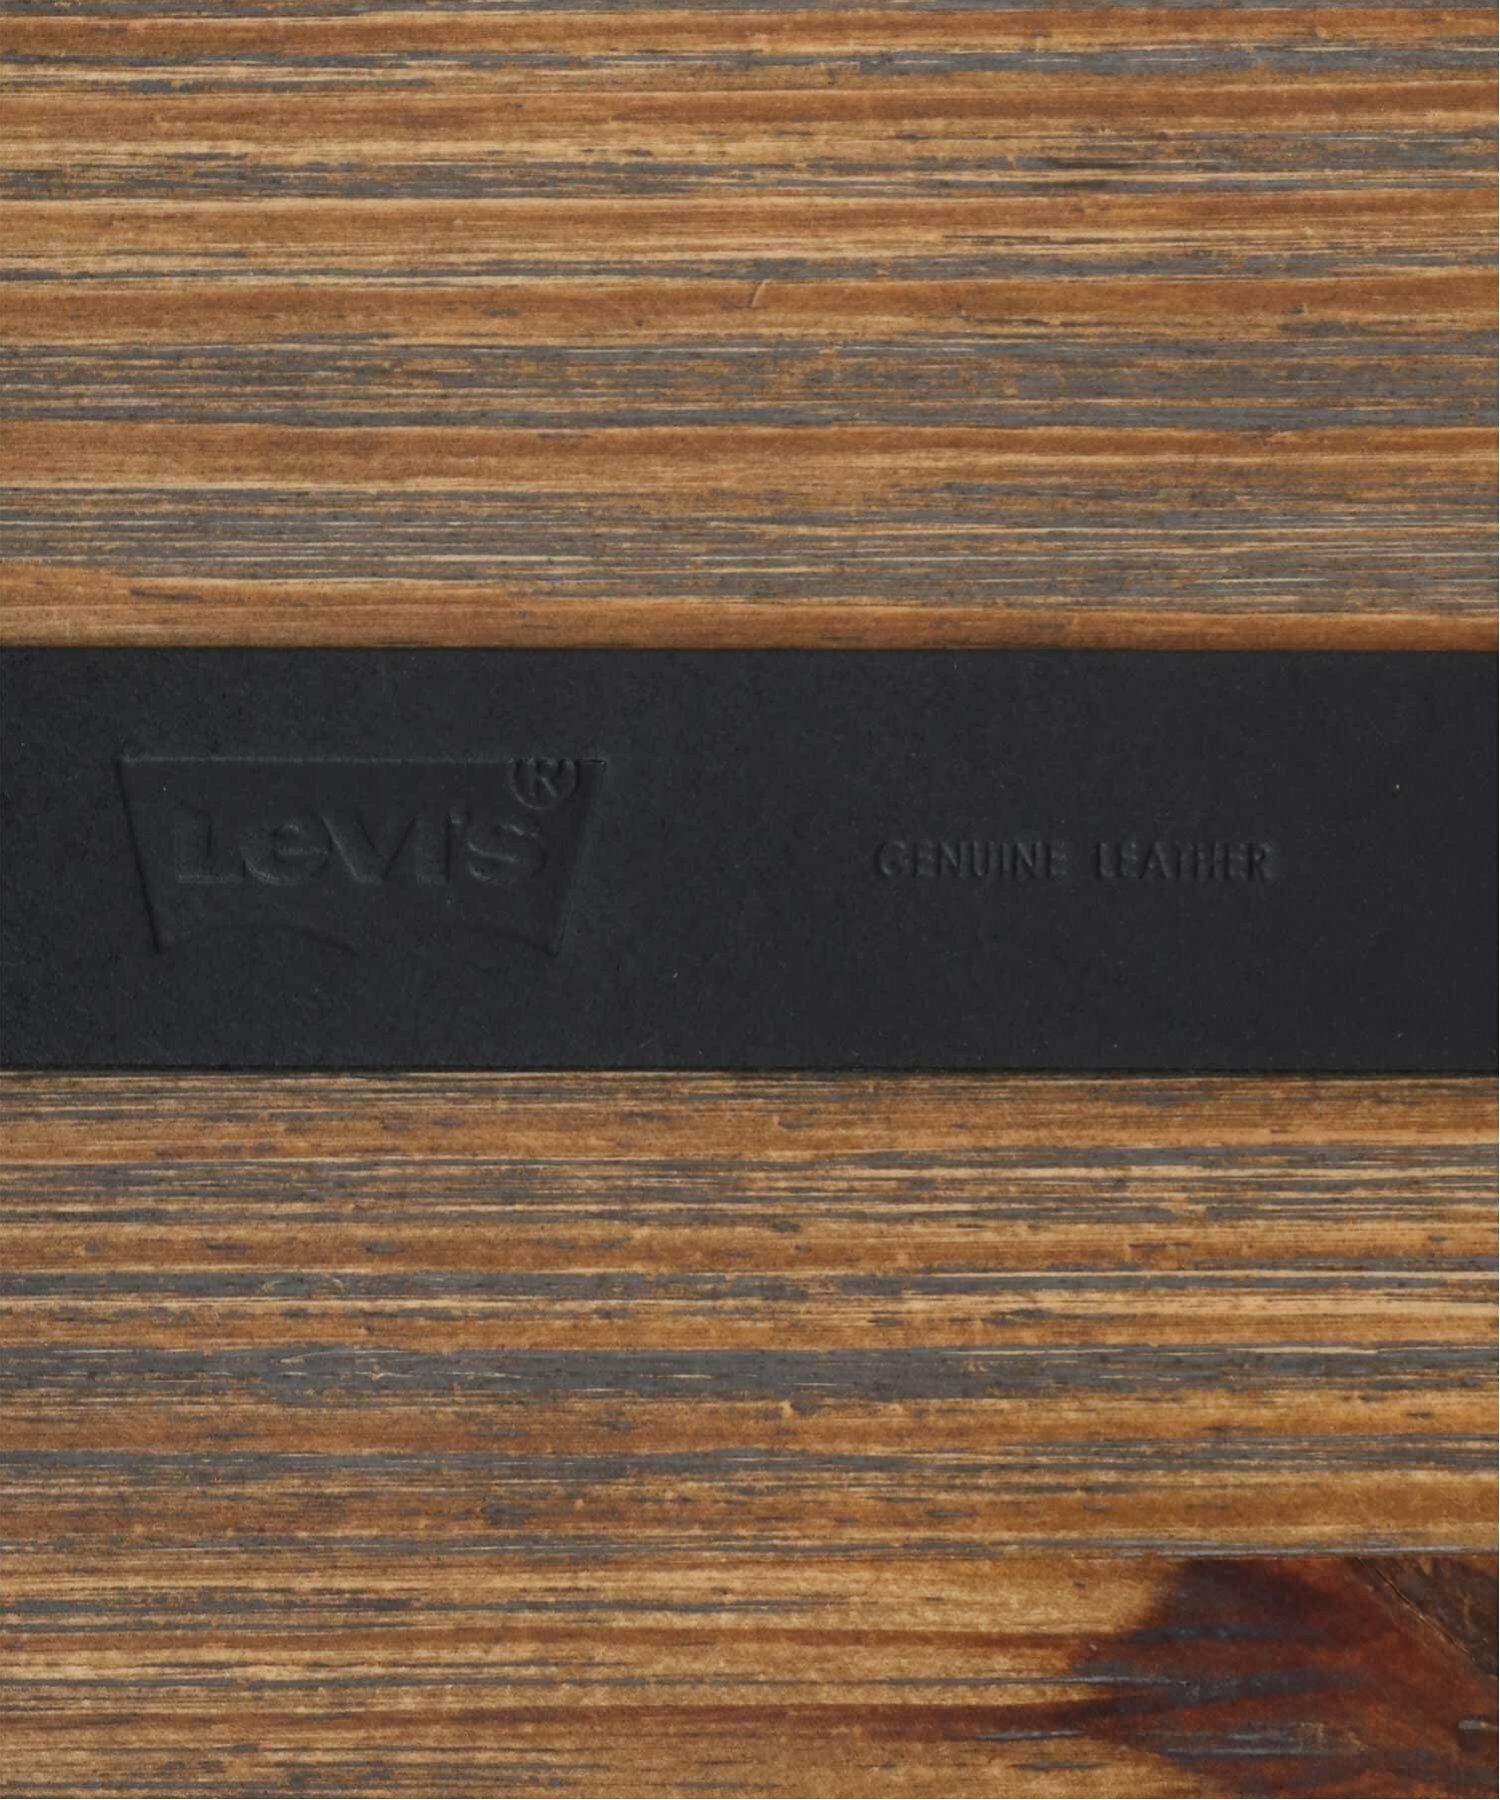 Levi's ベルト メンズ レザー 本革 35mm バックル